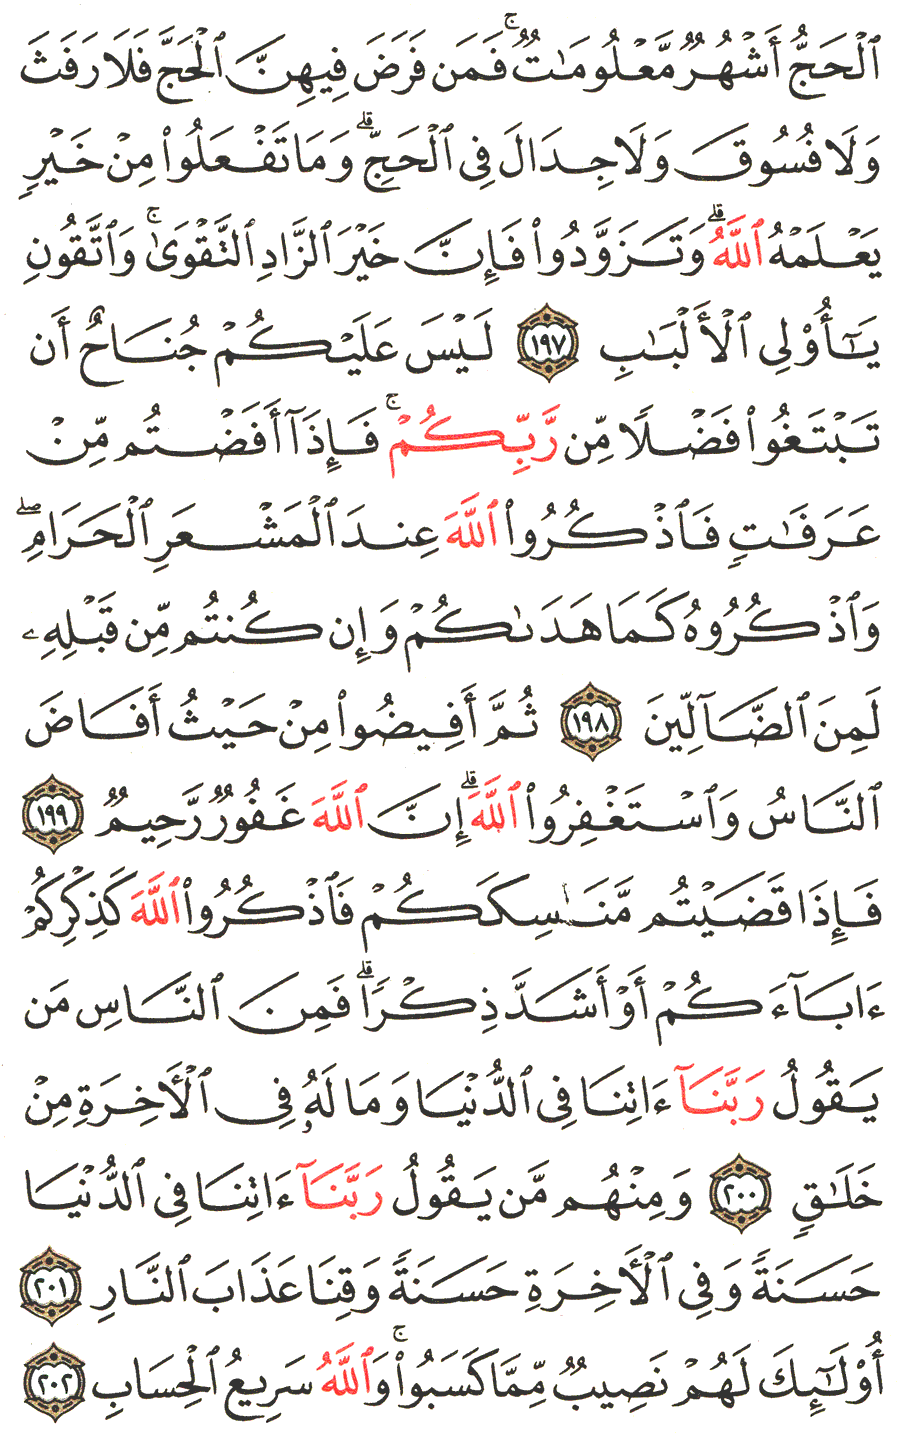 الصفحة رقم  31 من القرآن الكريم مكتوبة من المصحف